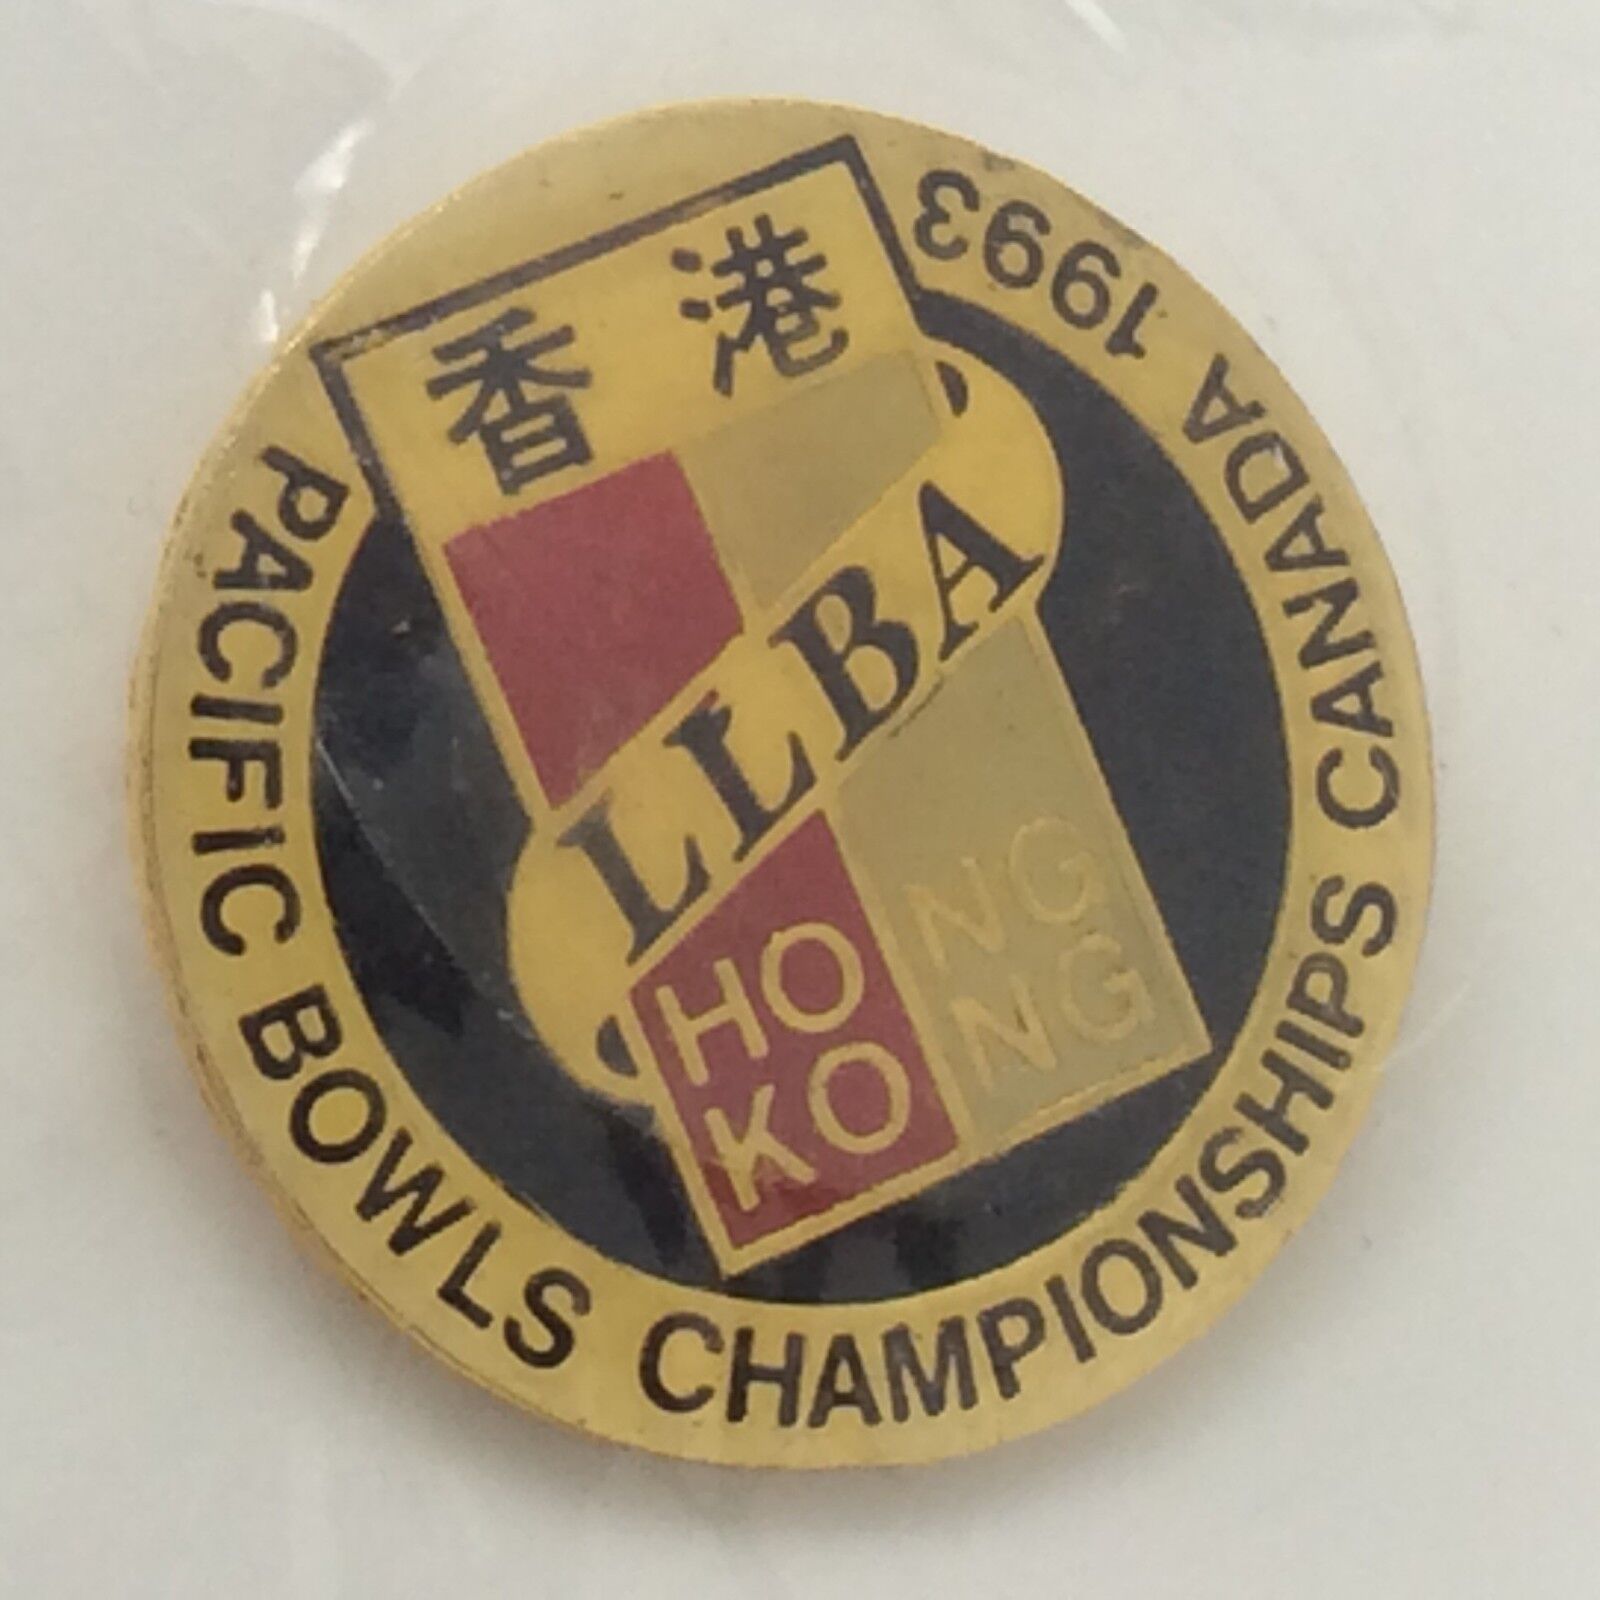 1993 Pacific Bowls Championship Canada LLBA Hong Kong Pin F989